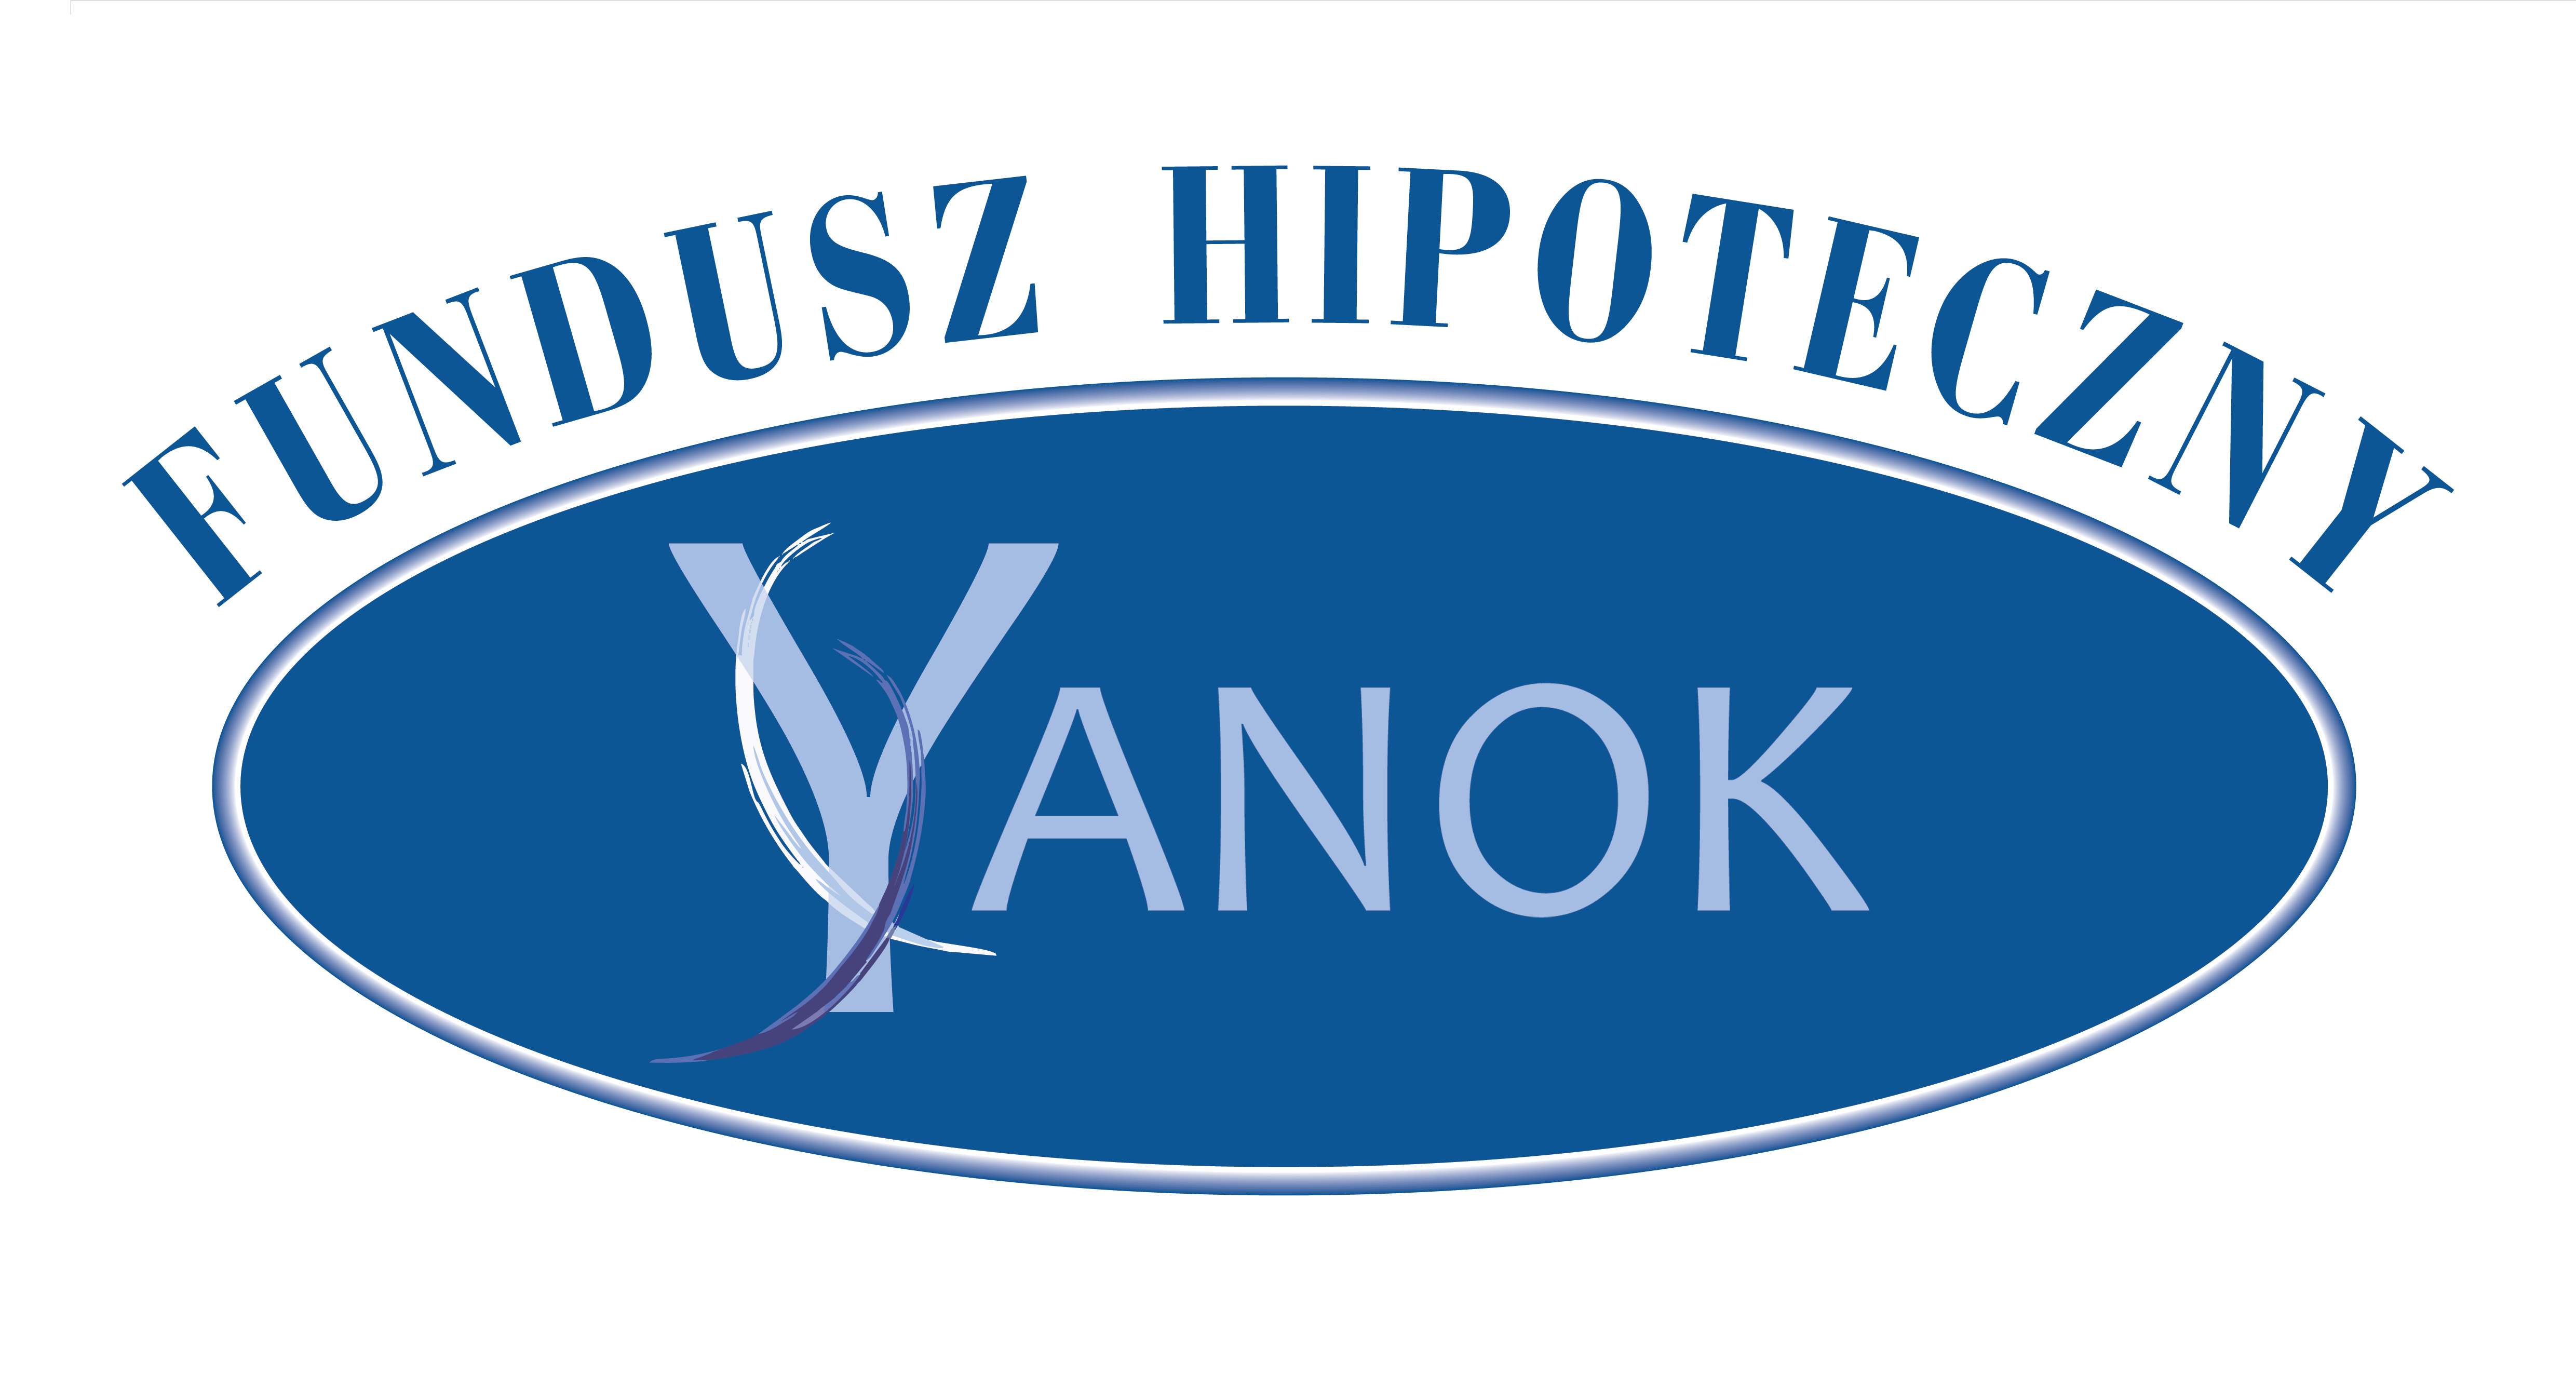 Fundusz Hipoteczny Yanok